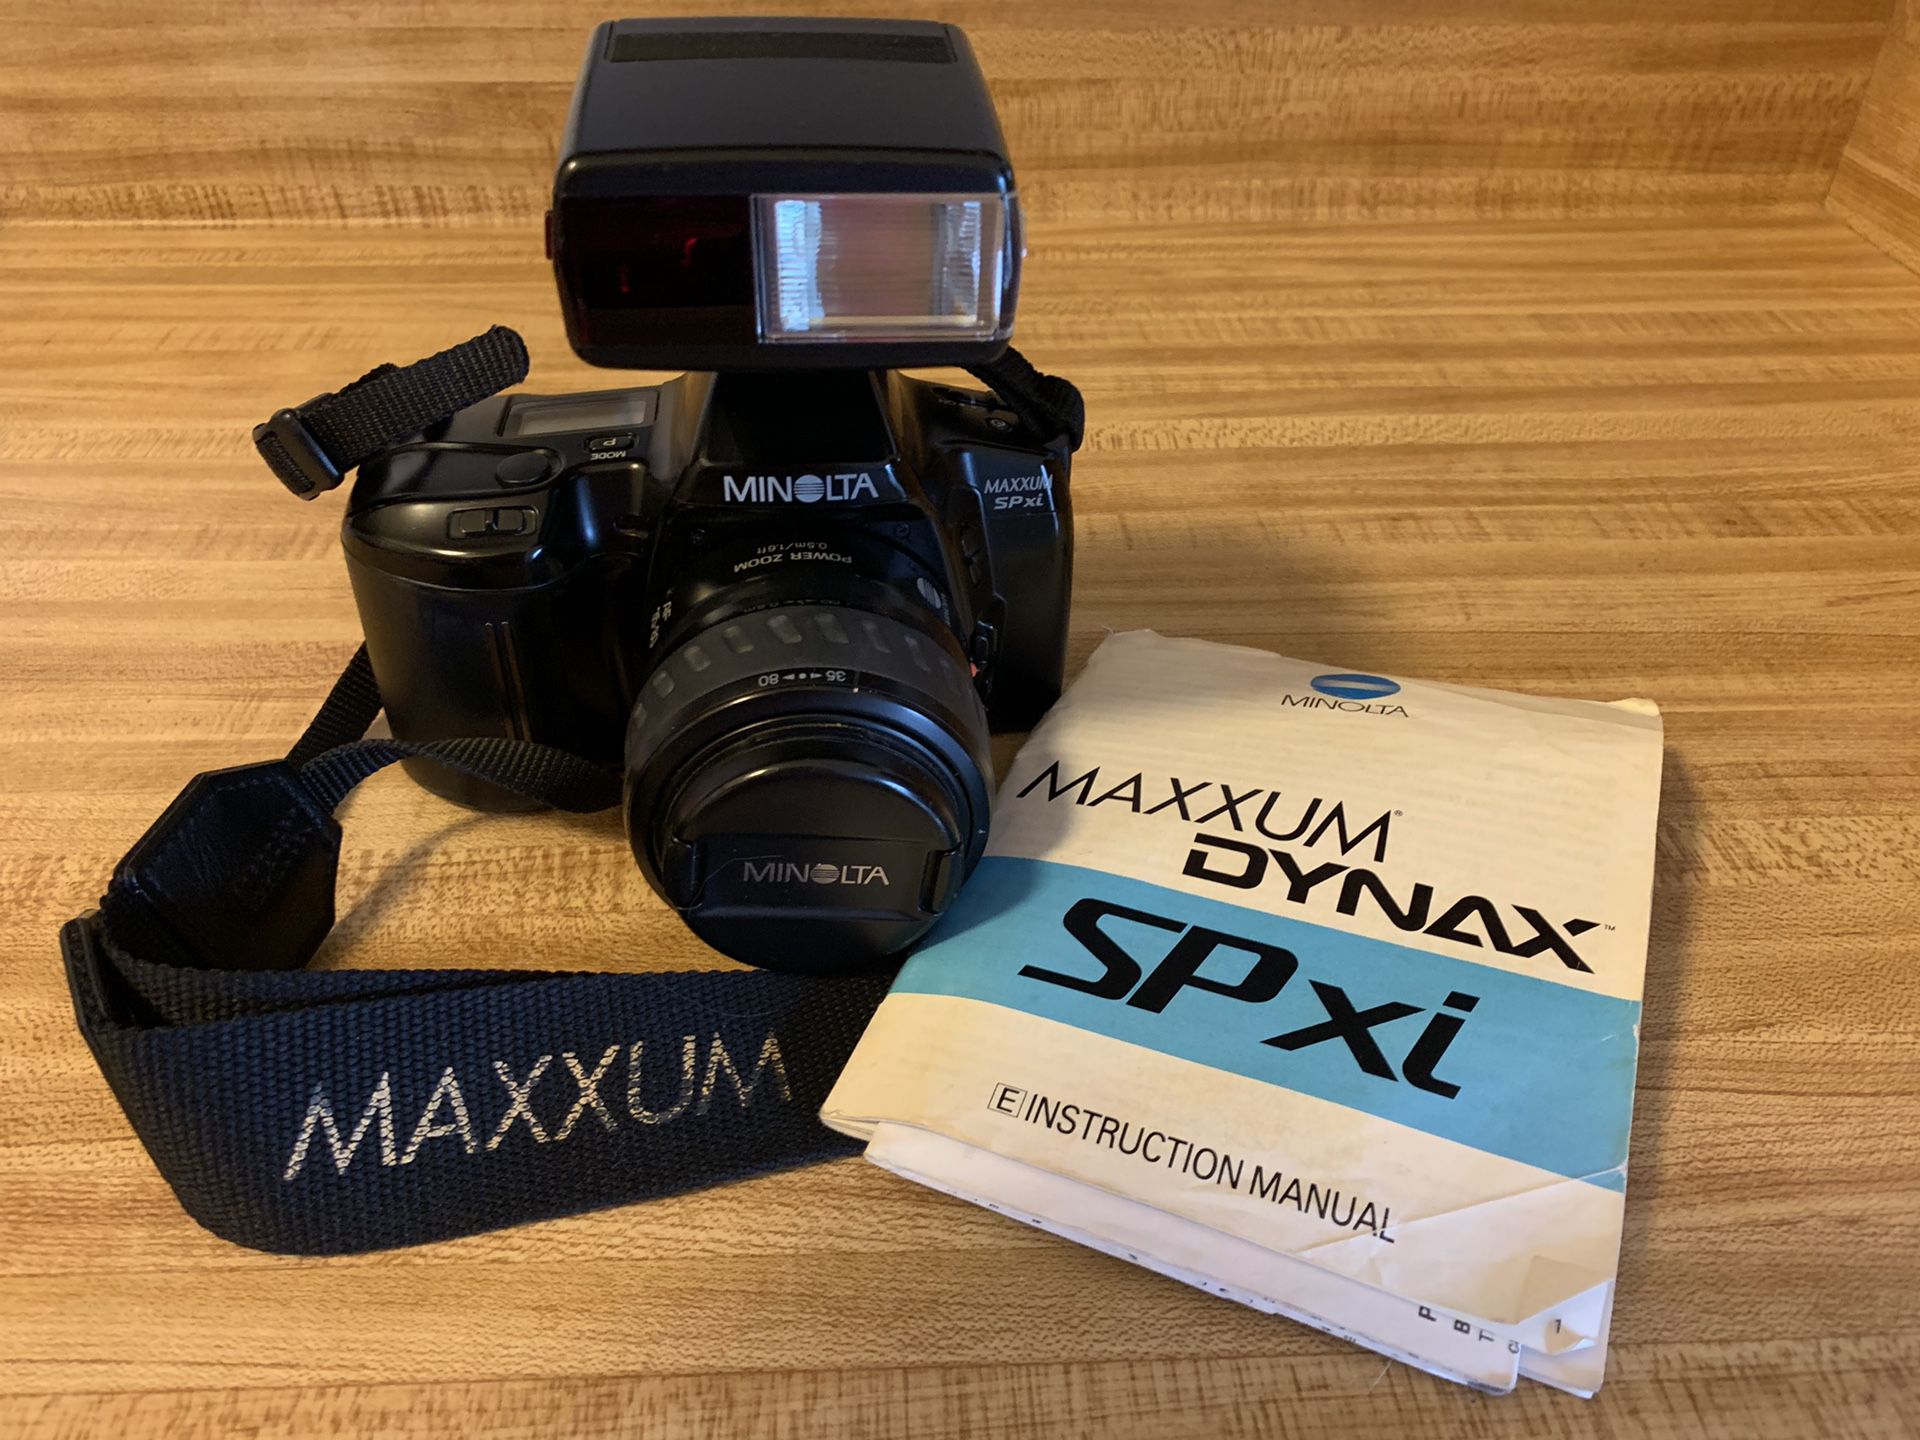 MINOLTA MAXXUM SPxi 35mm Film Camera